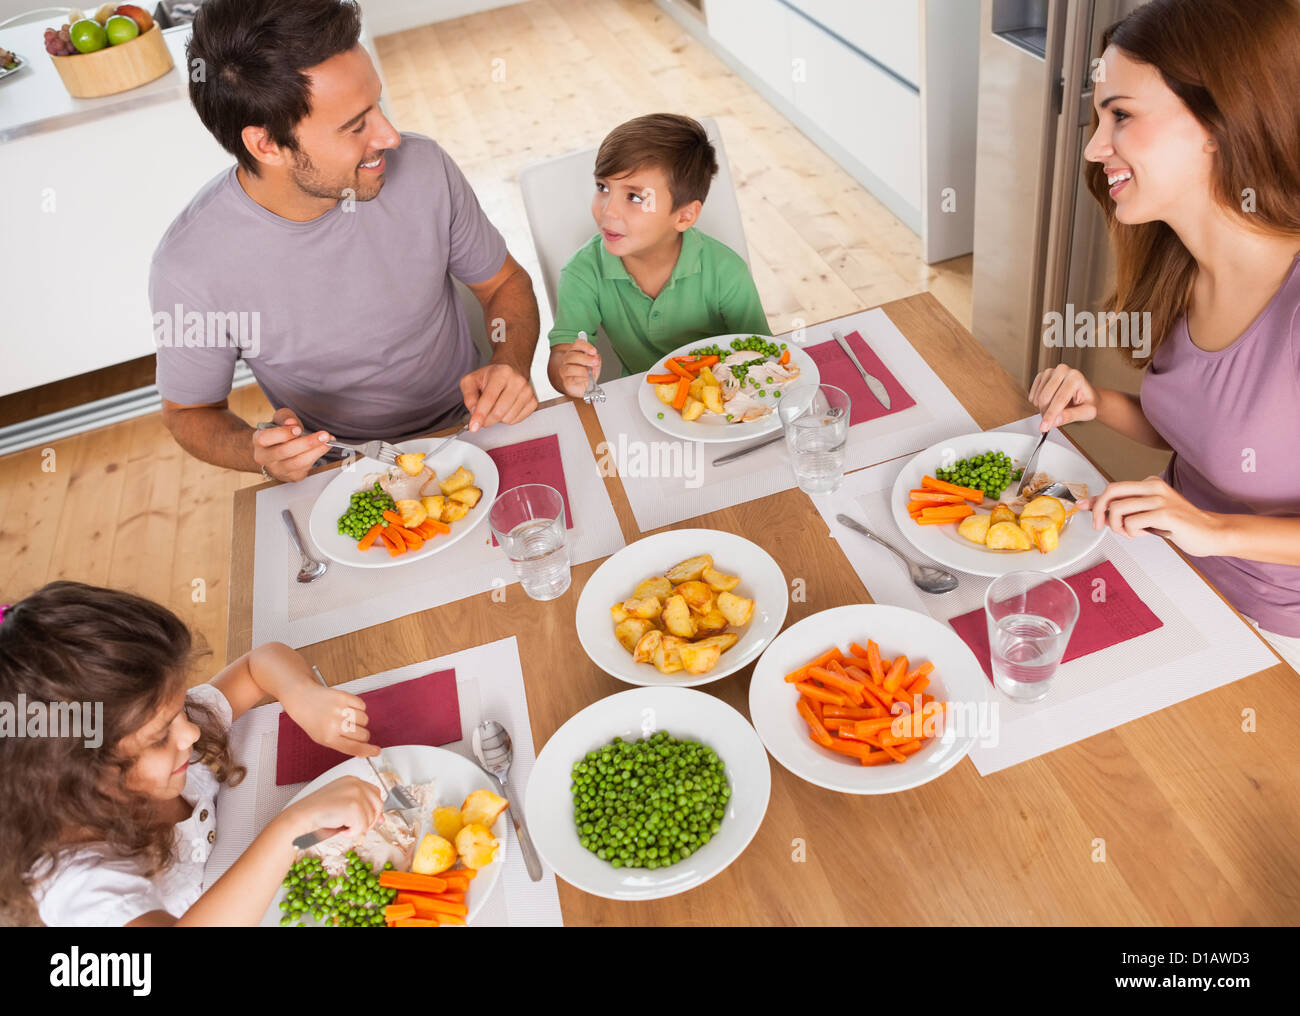 Famiglia sorridente attorno ad un pasto sano Foto Stock